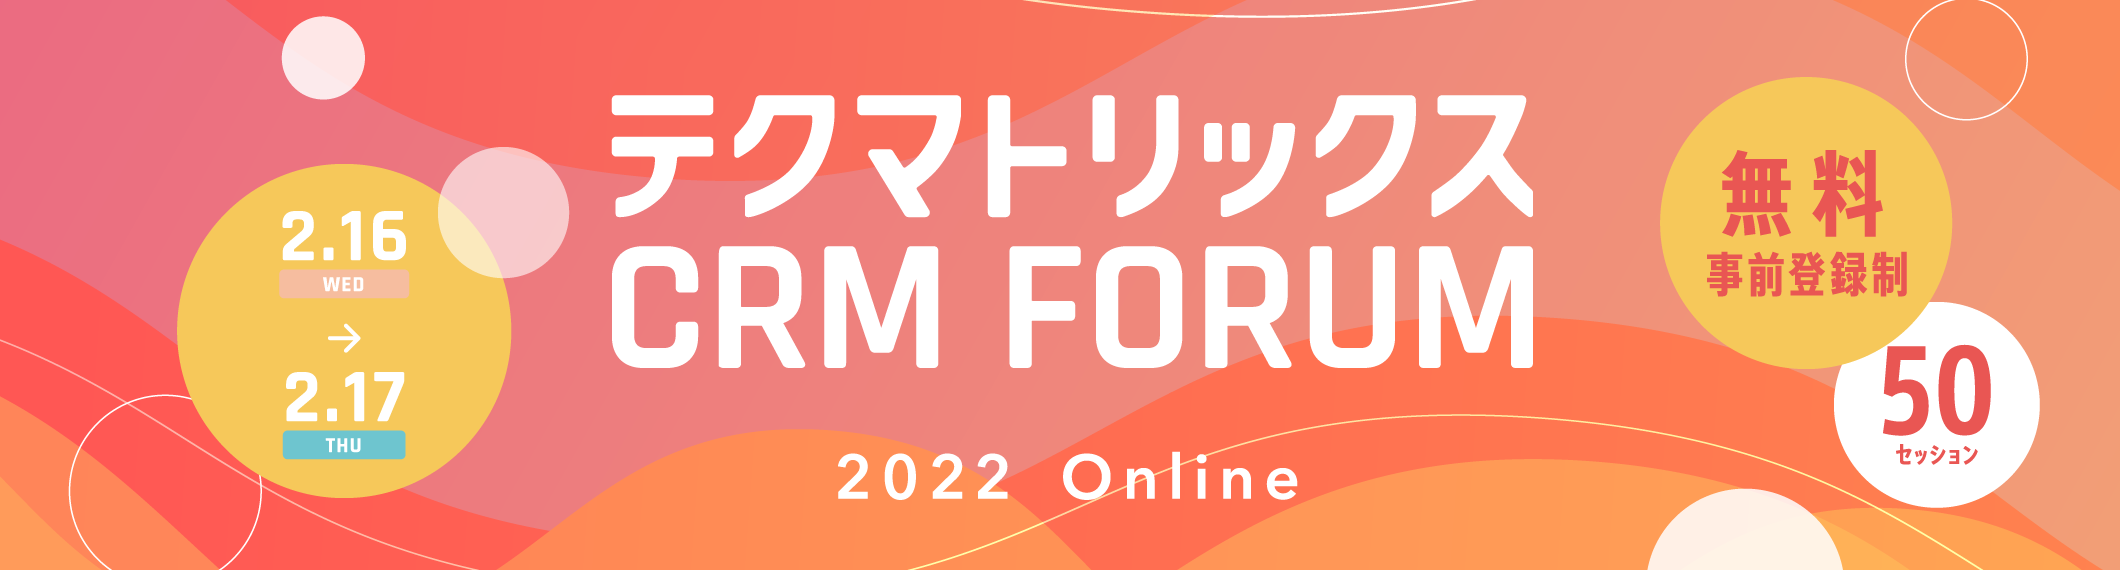 テクマトリックス CRM FORUM 2022 Online 2.16(WED) 17(THU) 50セッション 無料 事前登録制